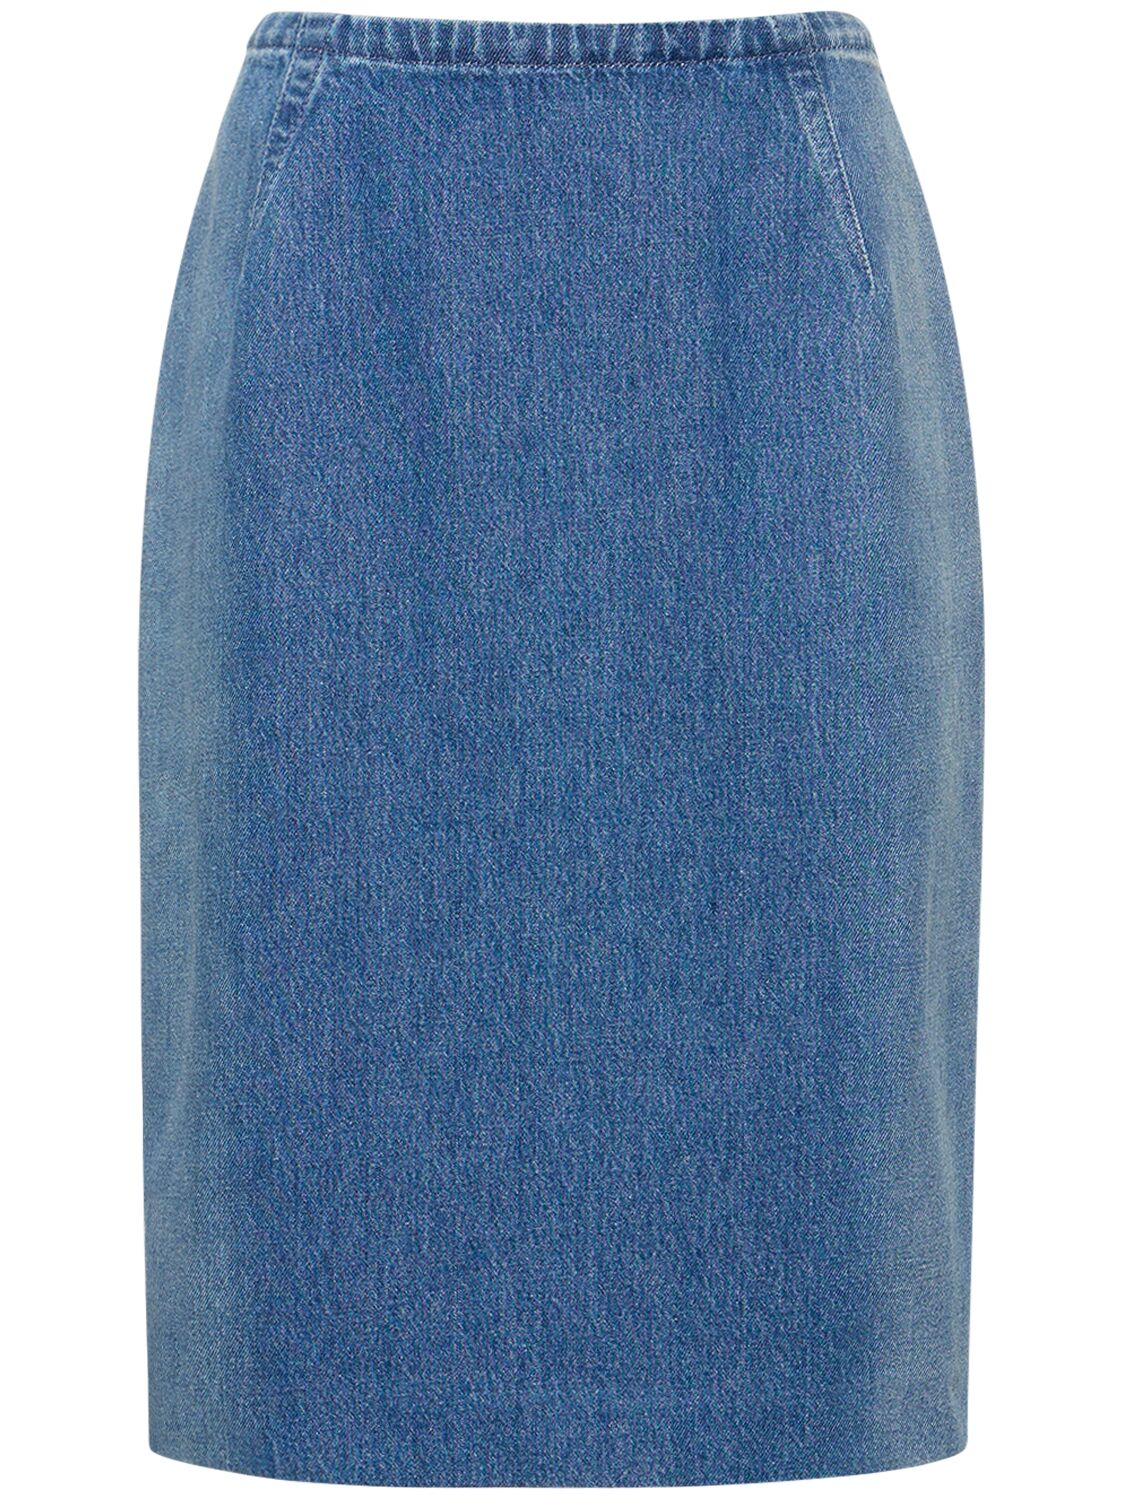 Denim Pencil Skirt W/ Back Slit